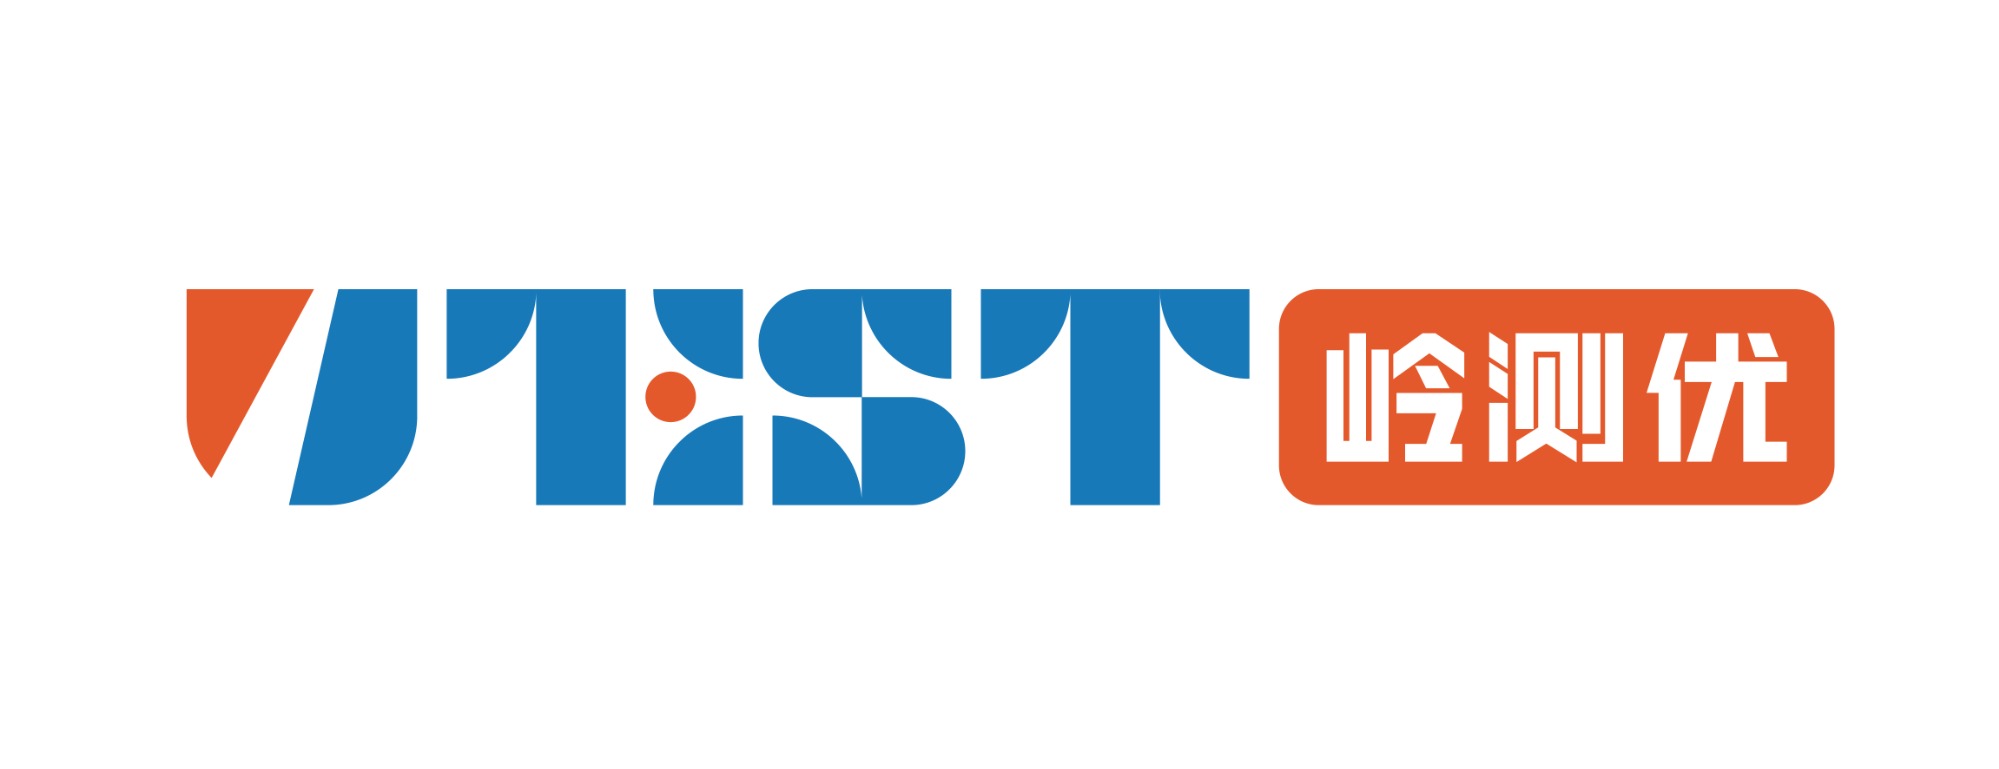 岭测优-UTEST标准测试服务